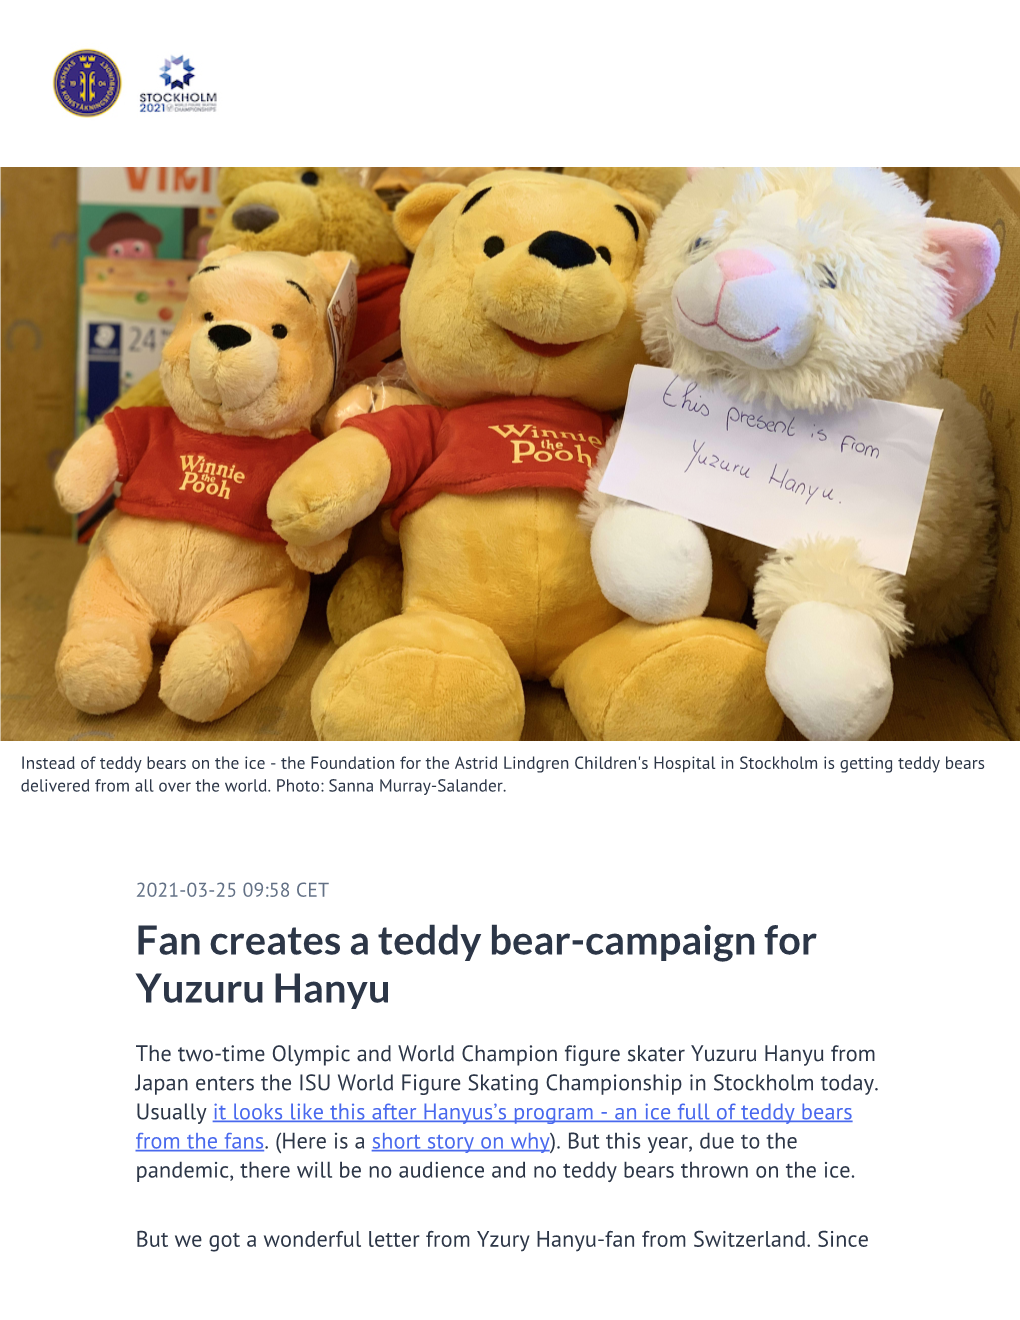 Fan Creates a Teddy Bear-Campaign for Yuzuru Hanyu